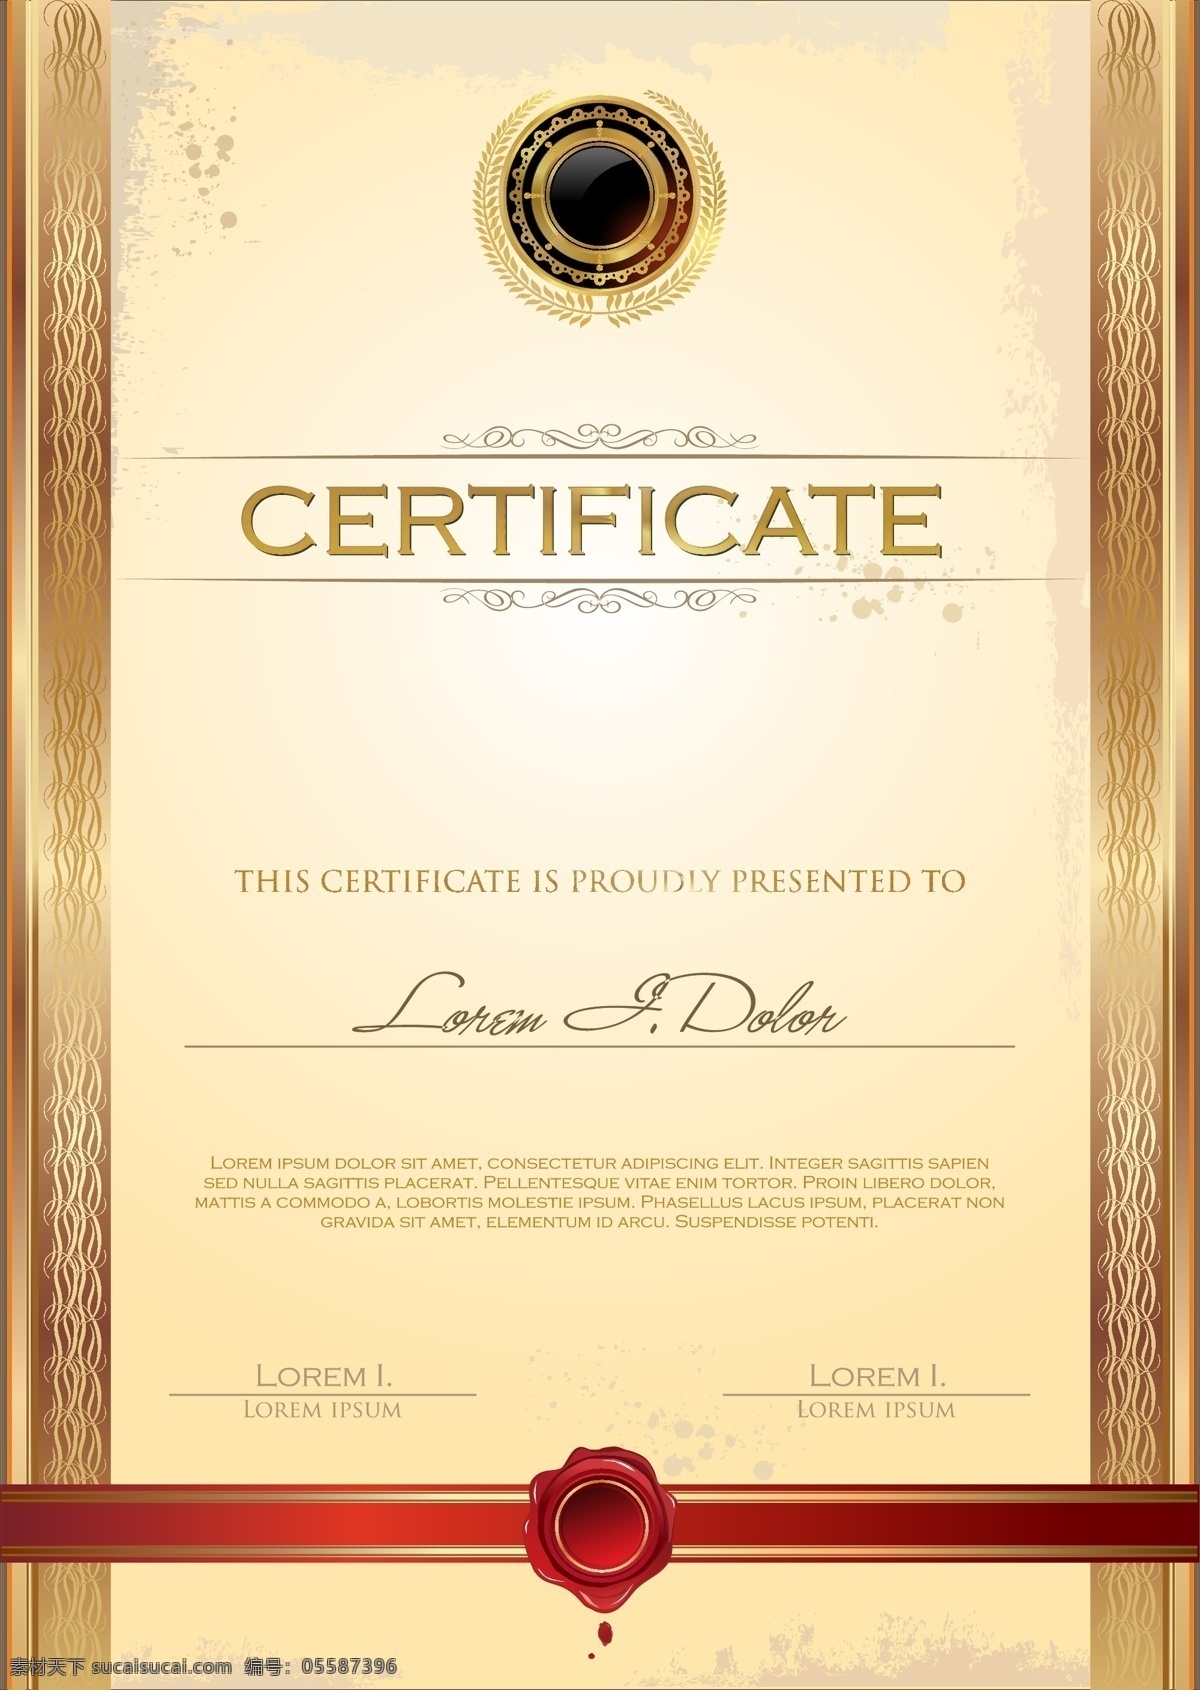 荣誉证书模板 证书模板 毕业证书 文凭 荣誉证书 授权证书 花边 边框 金色华丽花纹 其他模板 矢量素材 白色